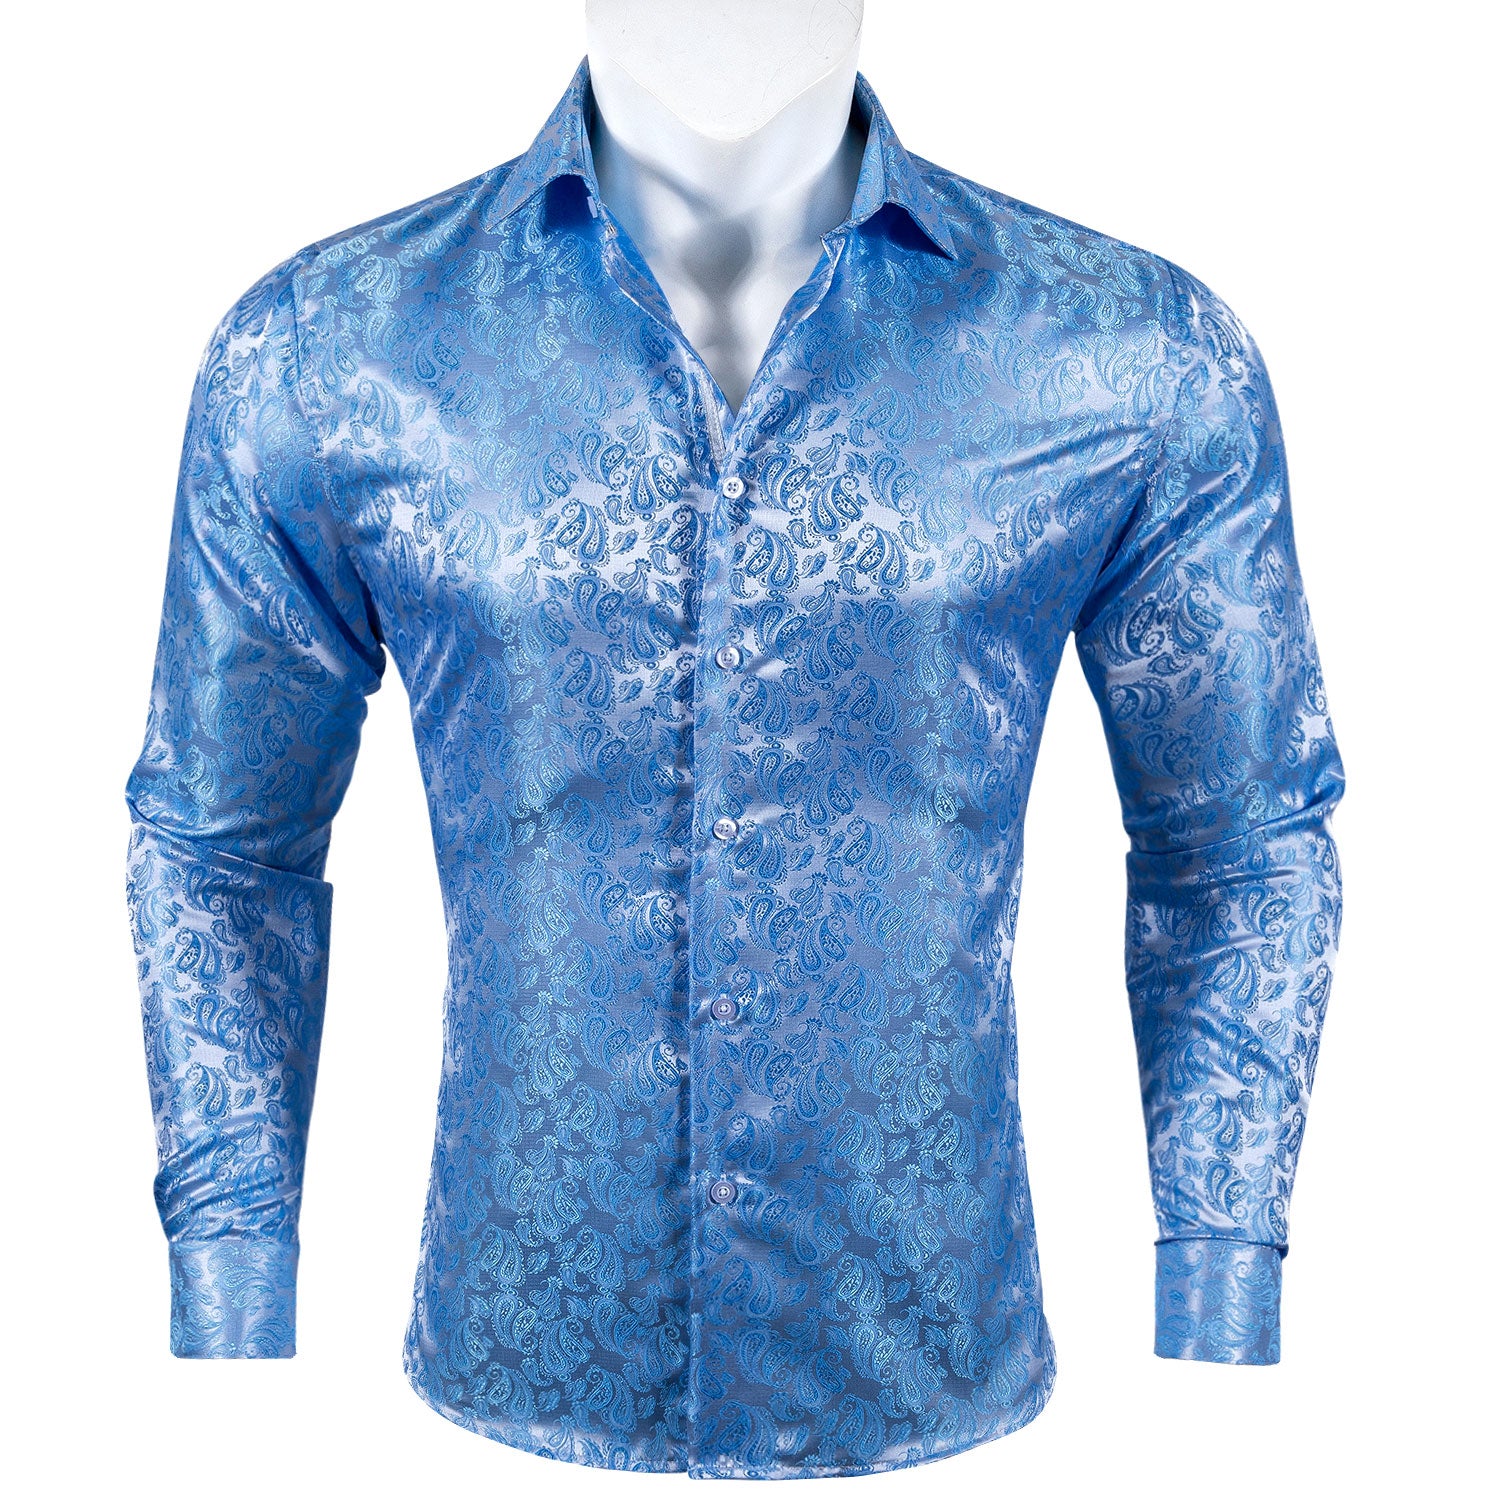 Barry.wang Button Down Shirt Light Blue Paisley Silk Men's Long Sleeve Shirt